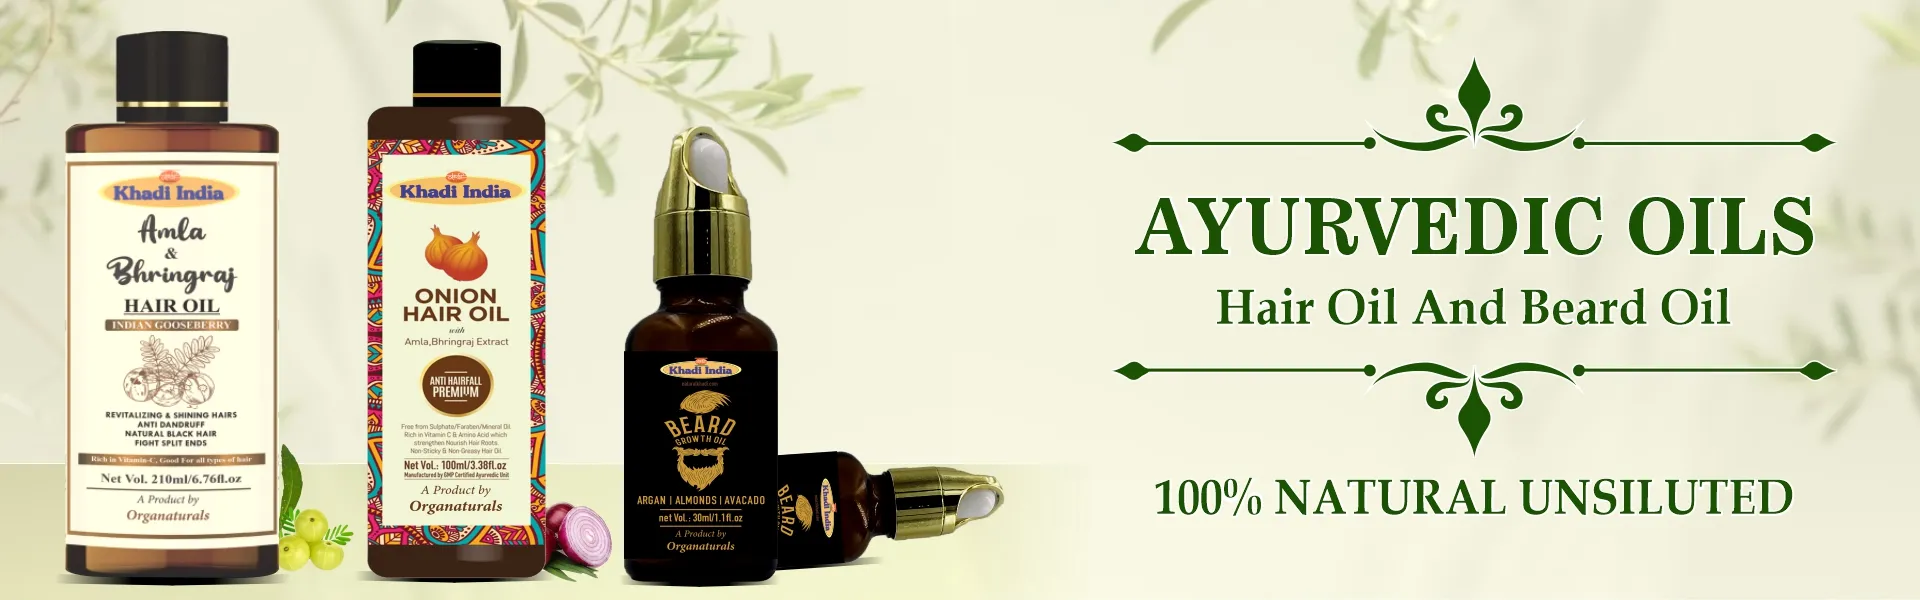 Ayurvedic oils - www.dkihenna.com